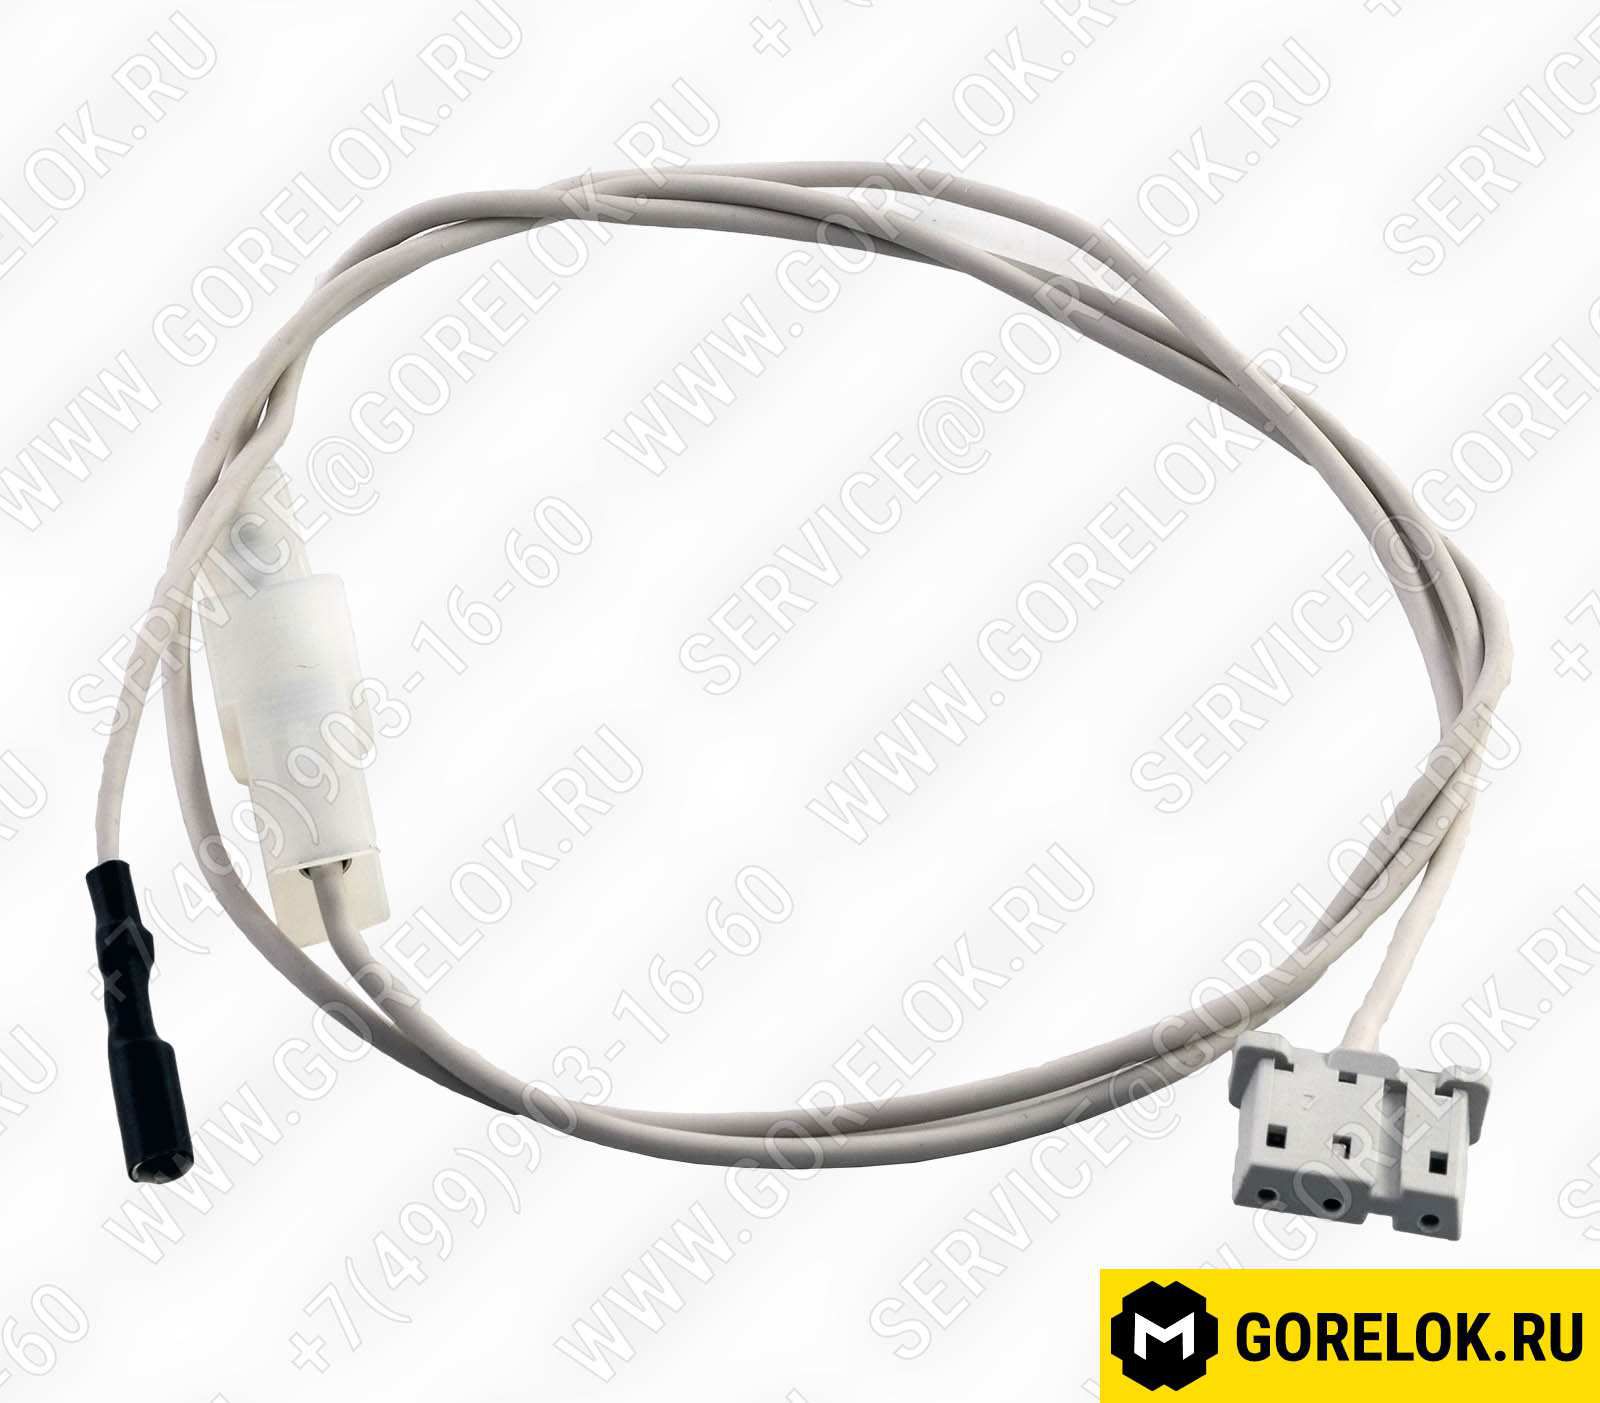 6050214 Новые поступления: Conn. cable 4 X 0.75 x000D 
1150 mm lang 15190725032